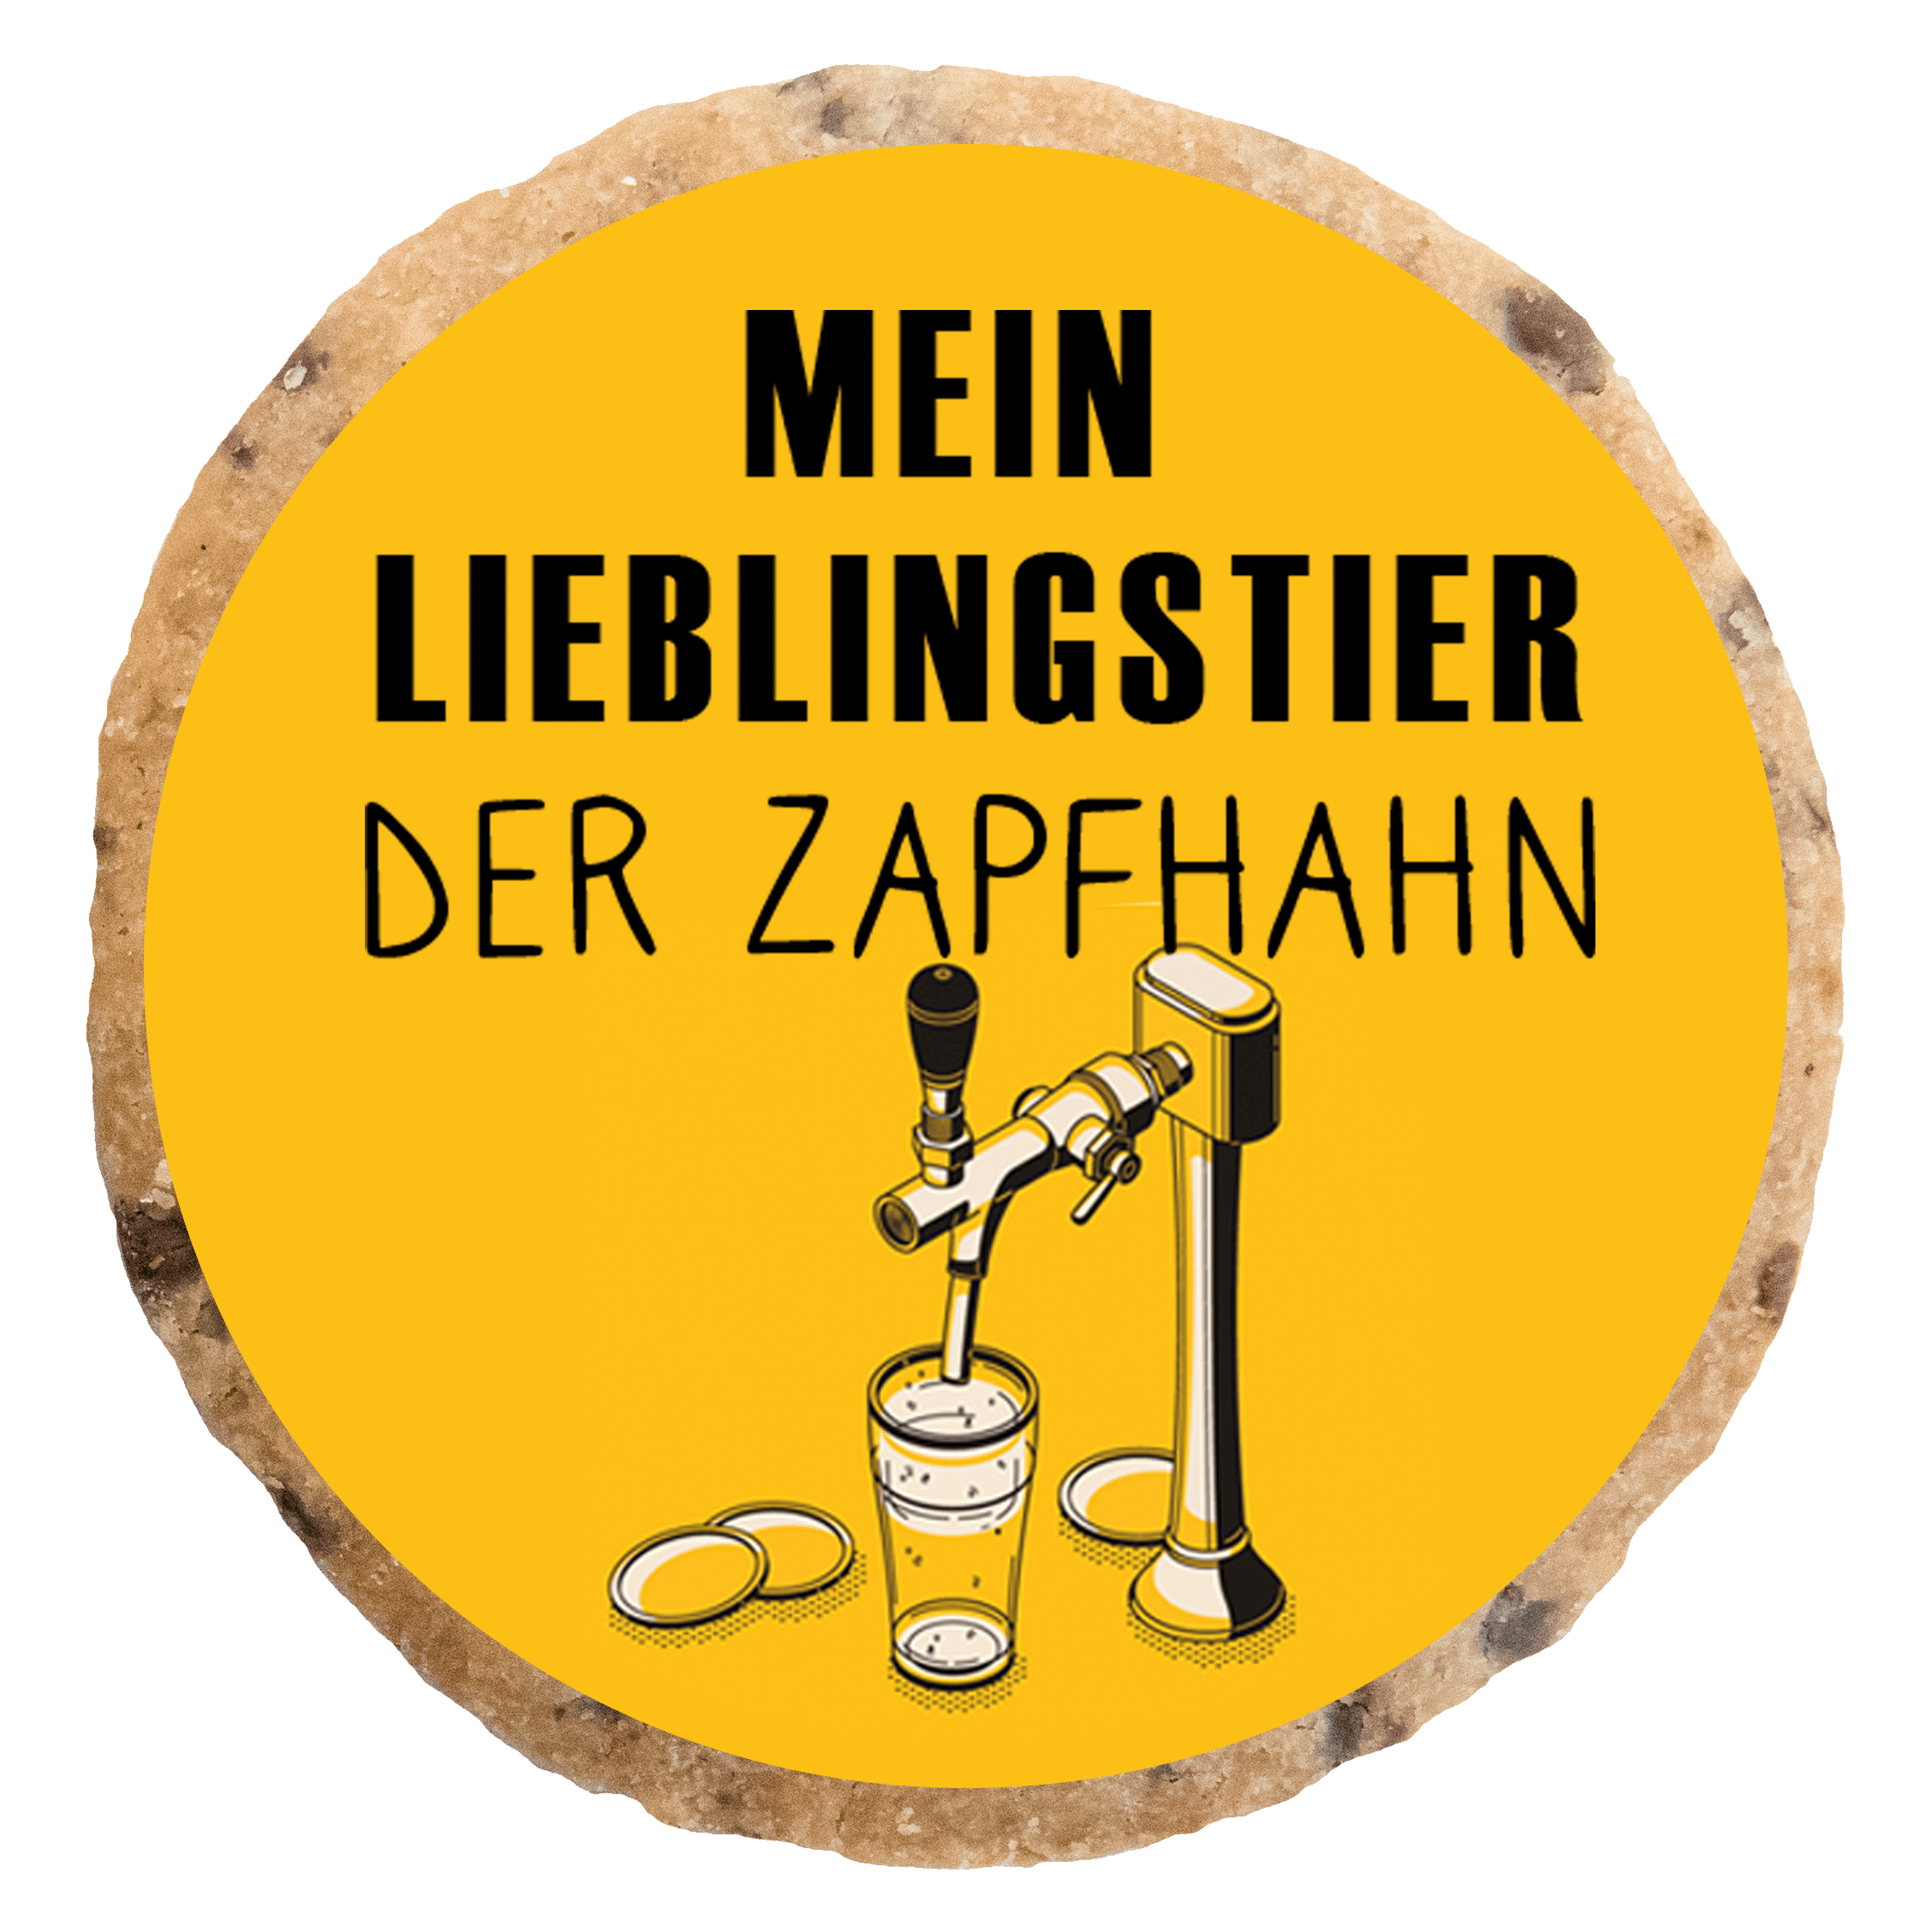 "Der Zapfhahn" MotivKEKS